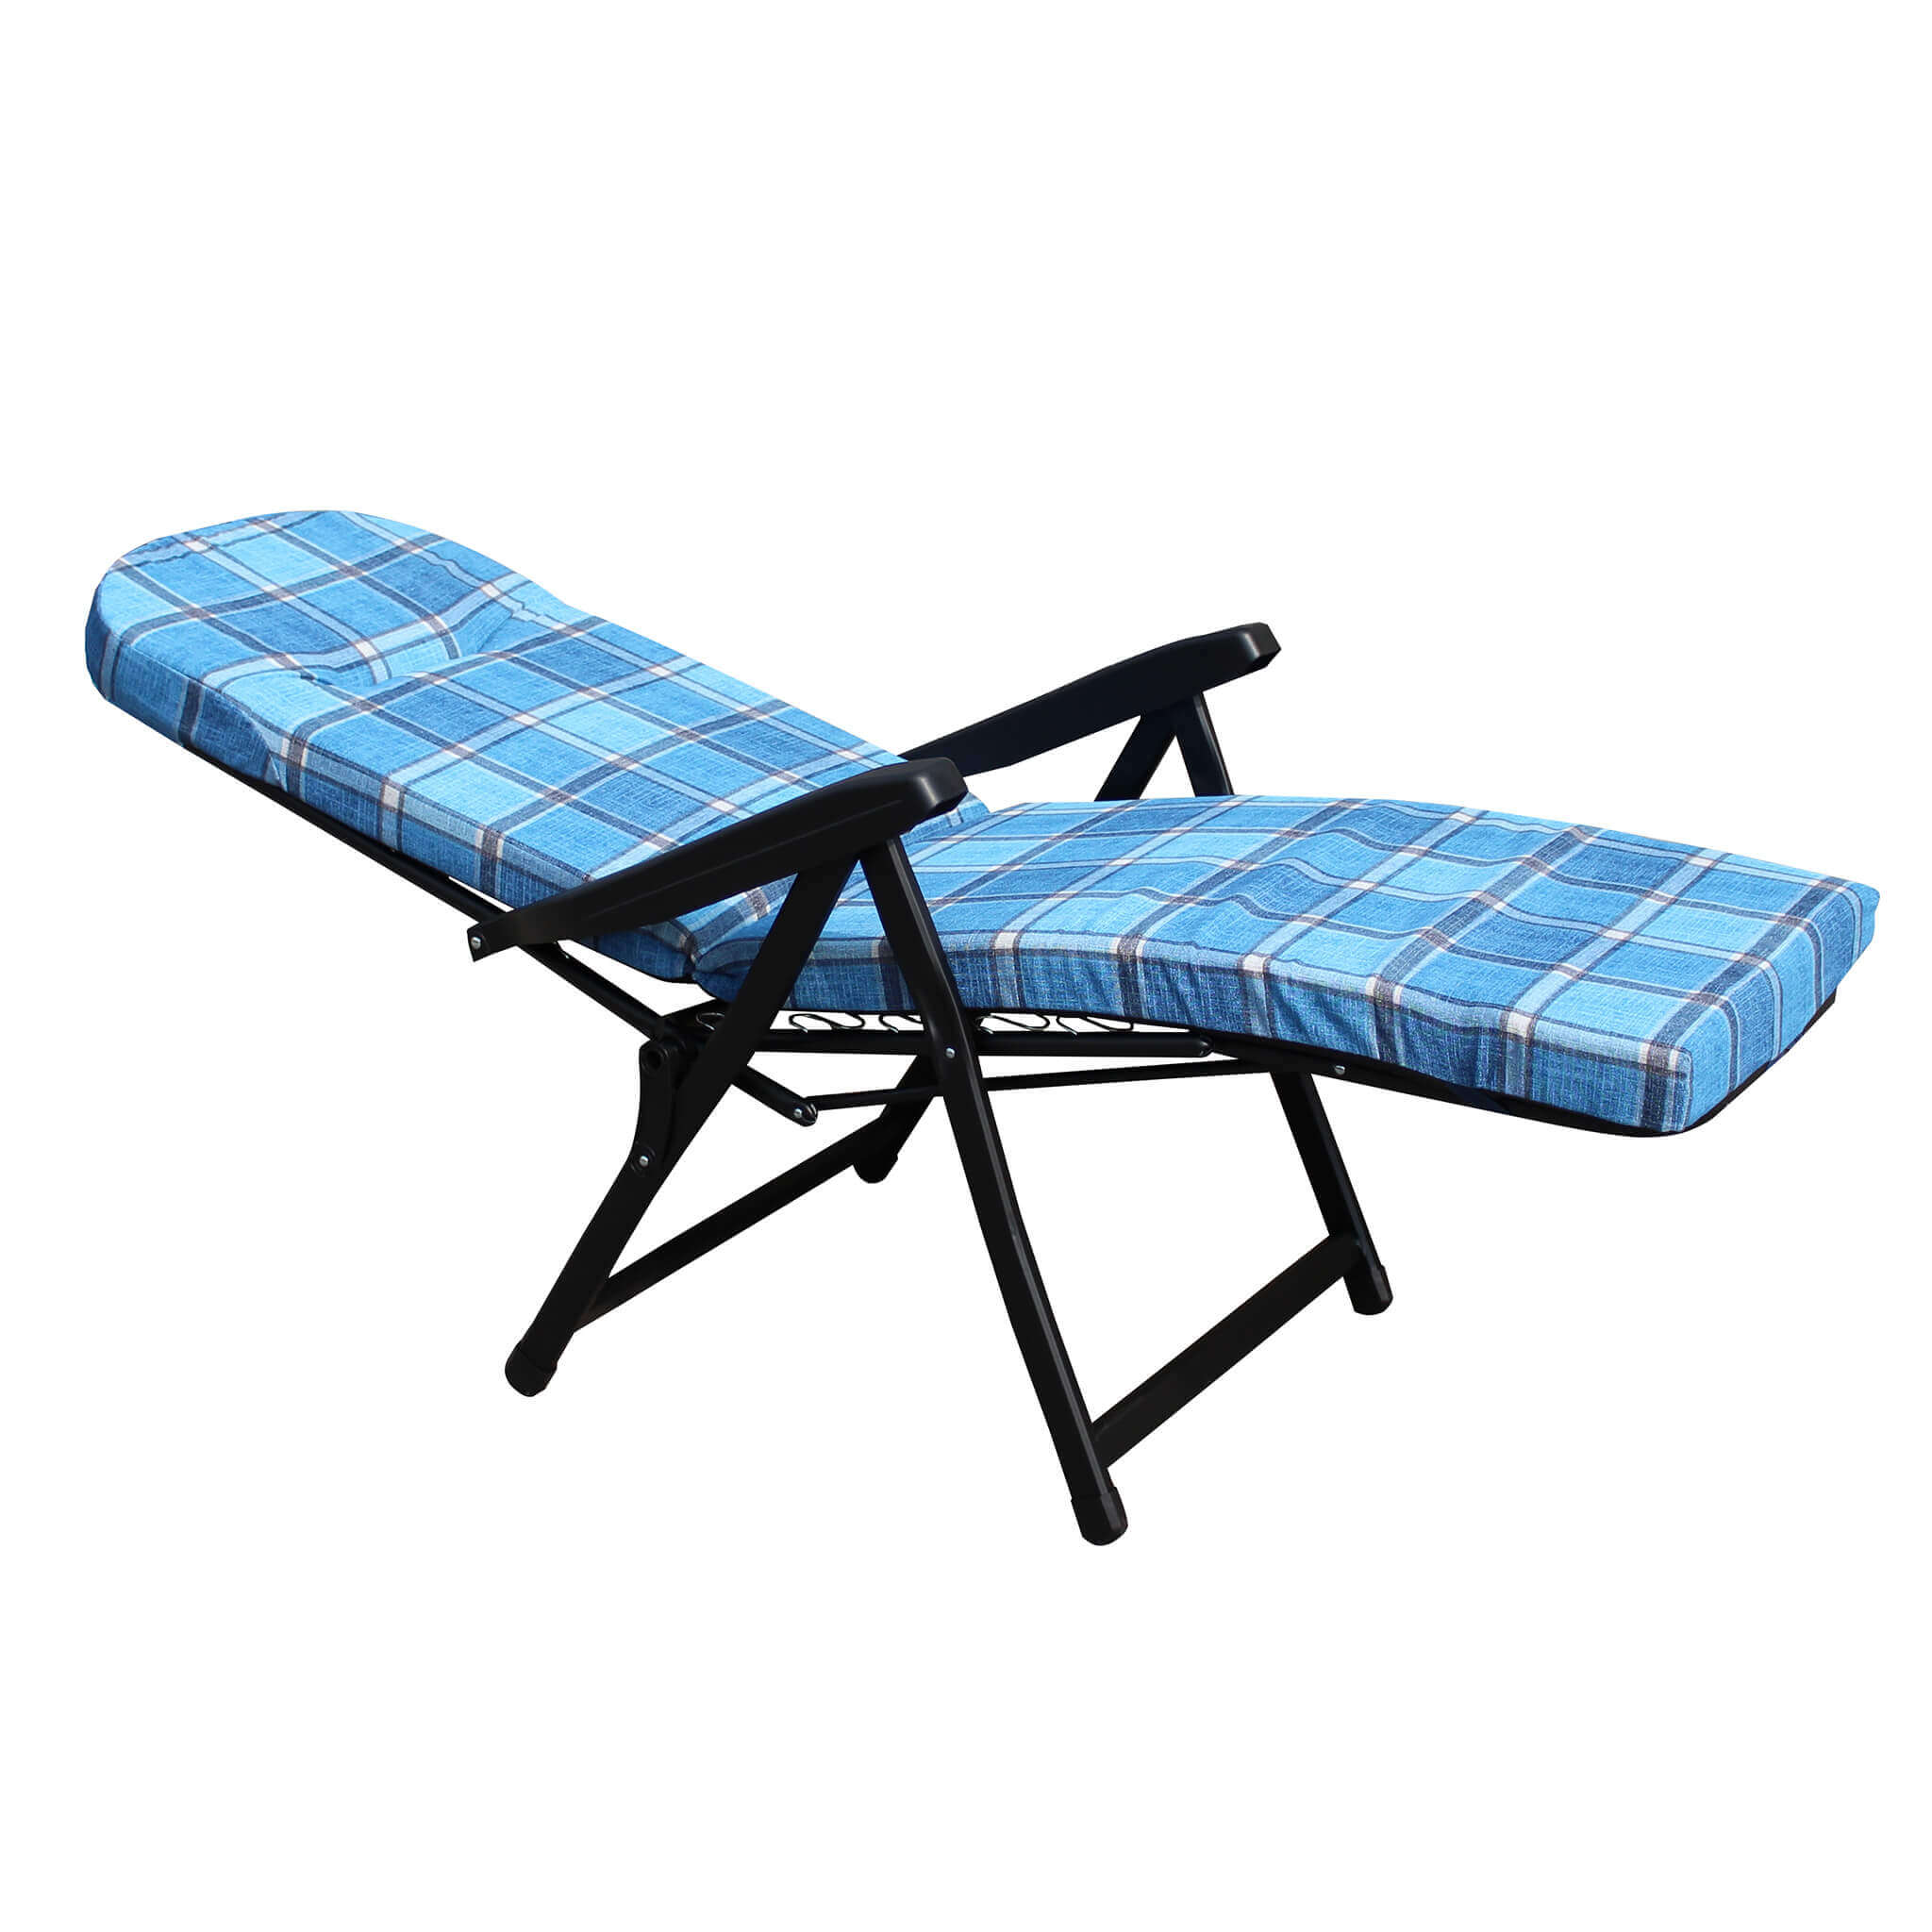 Poltrona a sdraio imbottita reclinabile cuscino imbottito alta densità,  adatta a giardino, portico, piscina e relax con poggiapiedi automatico